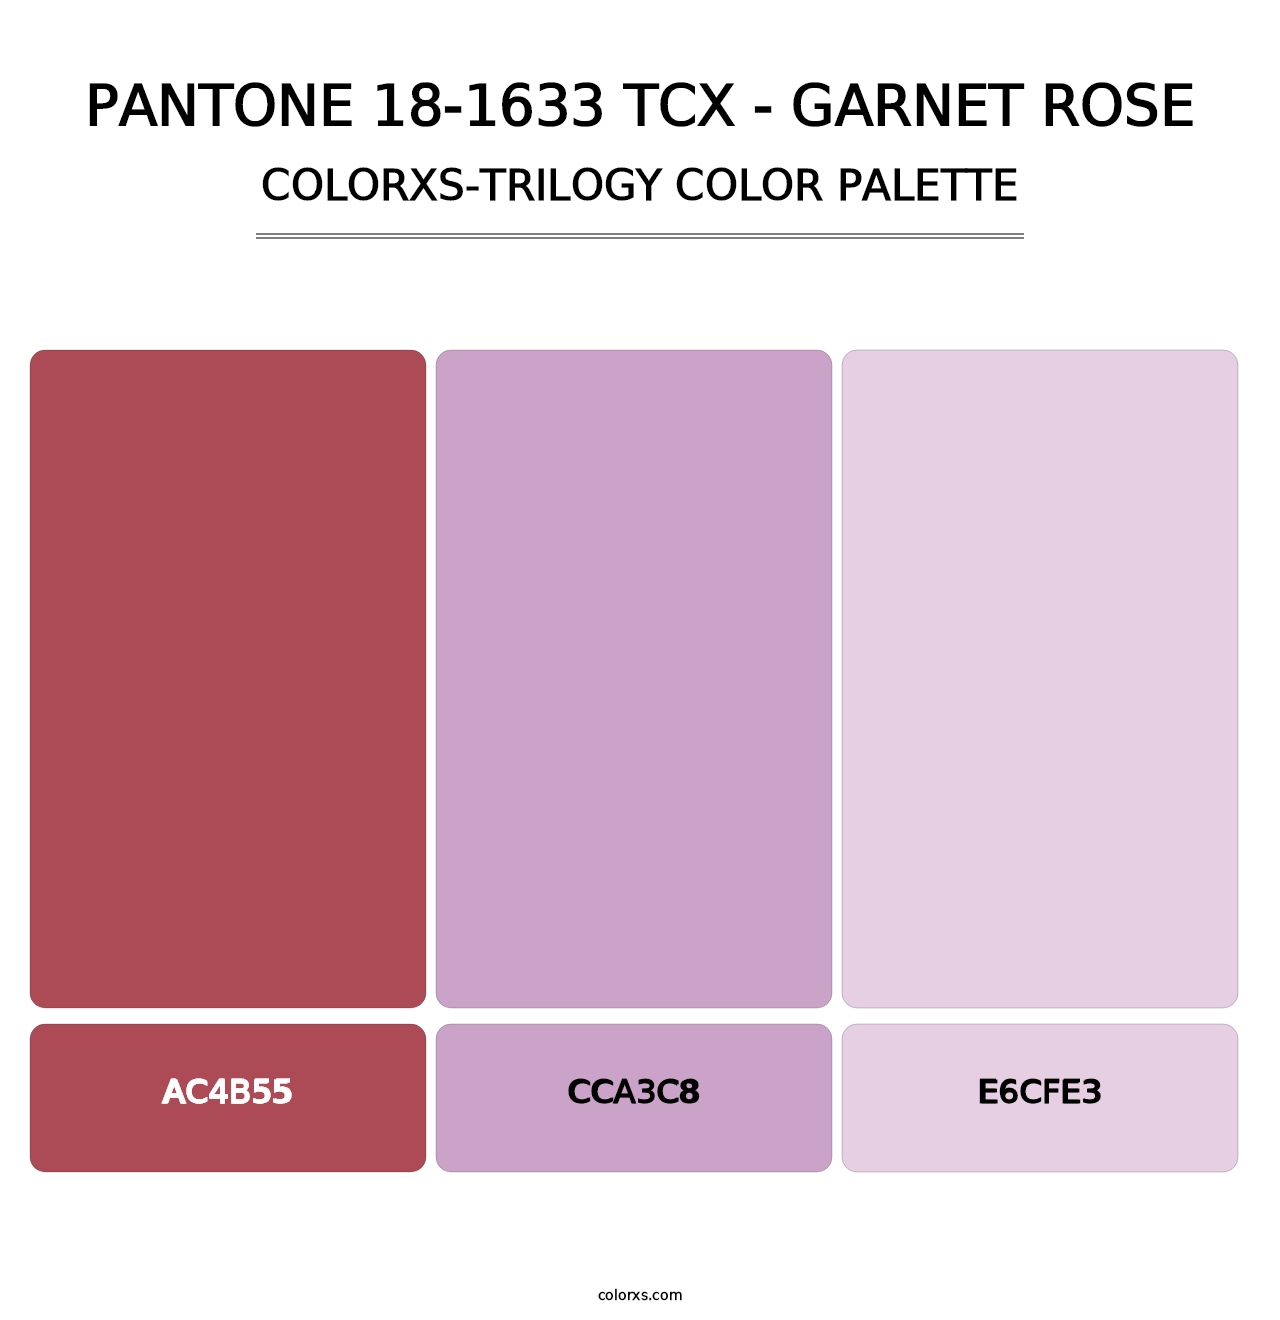 PANTONE 18-1633 TCX - Garnet Rose - Colorxs Trilogy Palette